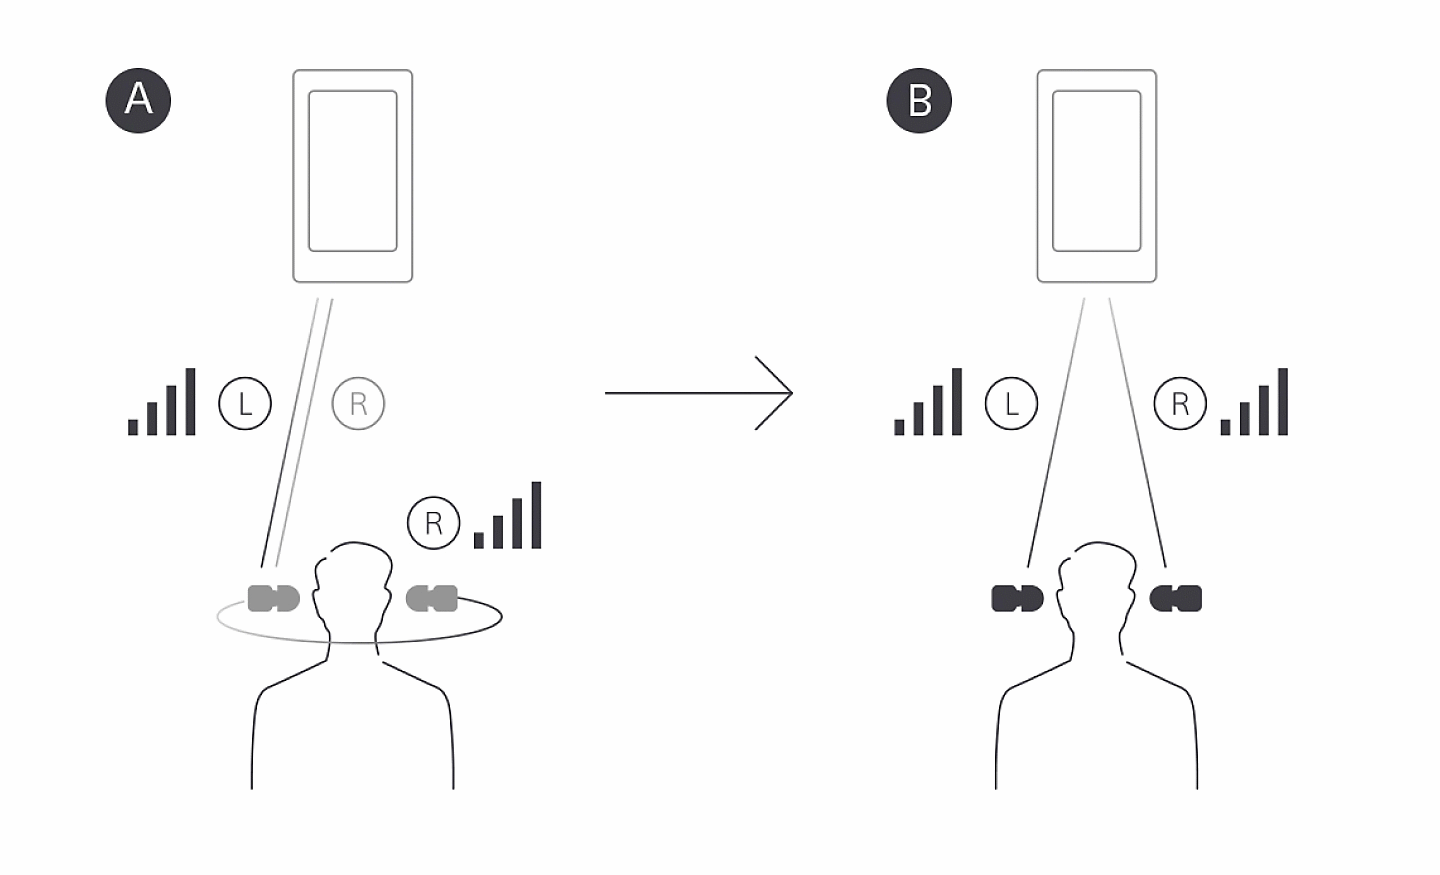 Illustration comparant la transmission Bluetooth en relais G vers D des écouteurs WF-1000X avec la transmission Bluetooth simultanée G/D des écouteurs WF-1000XM4